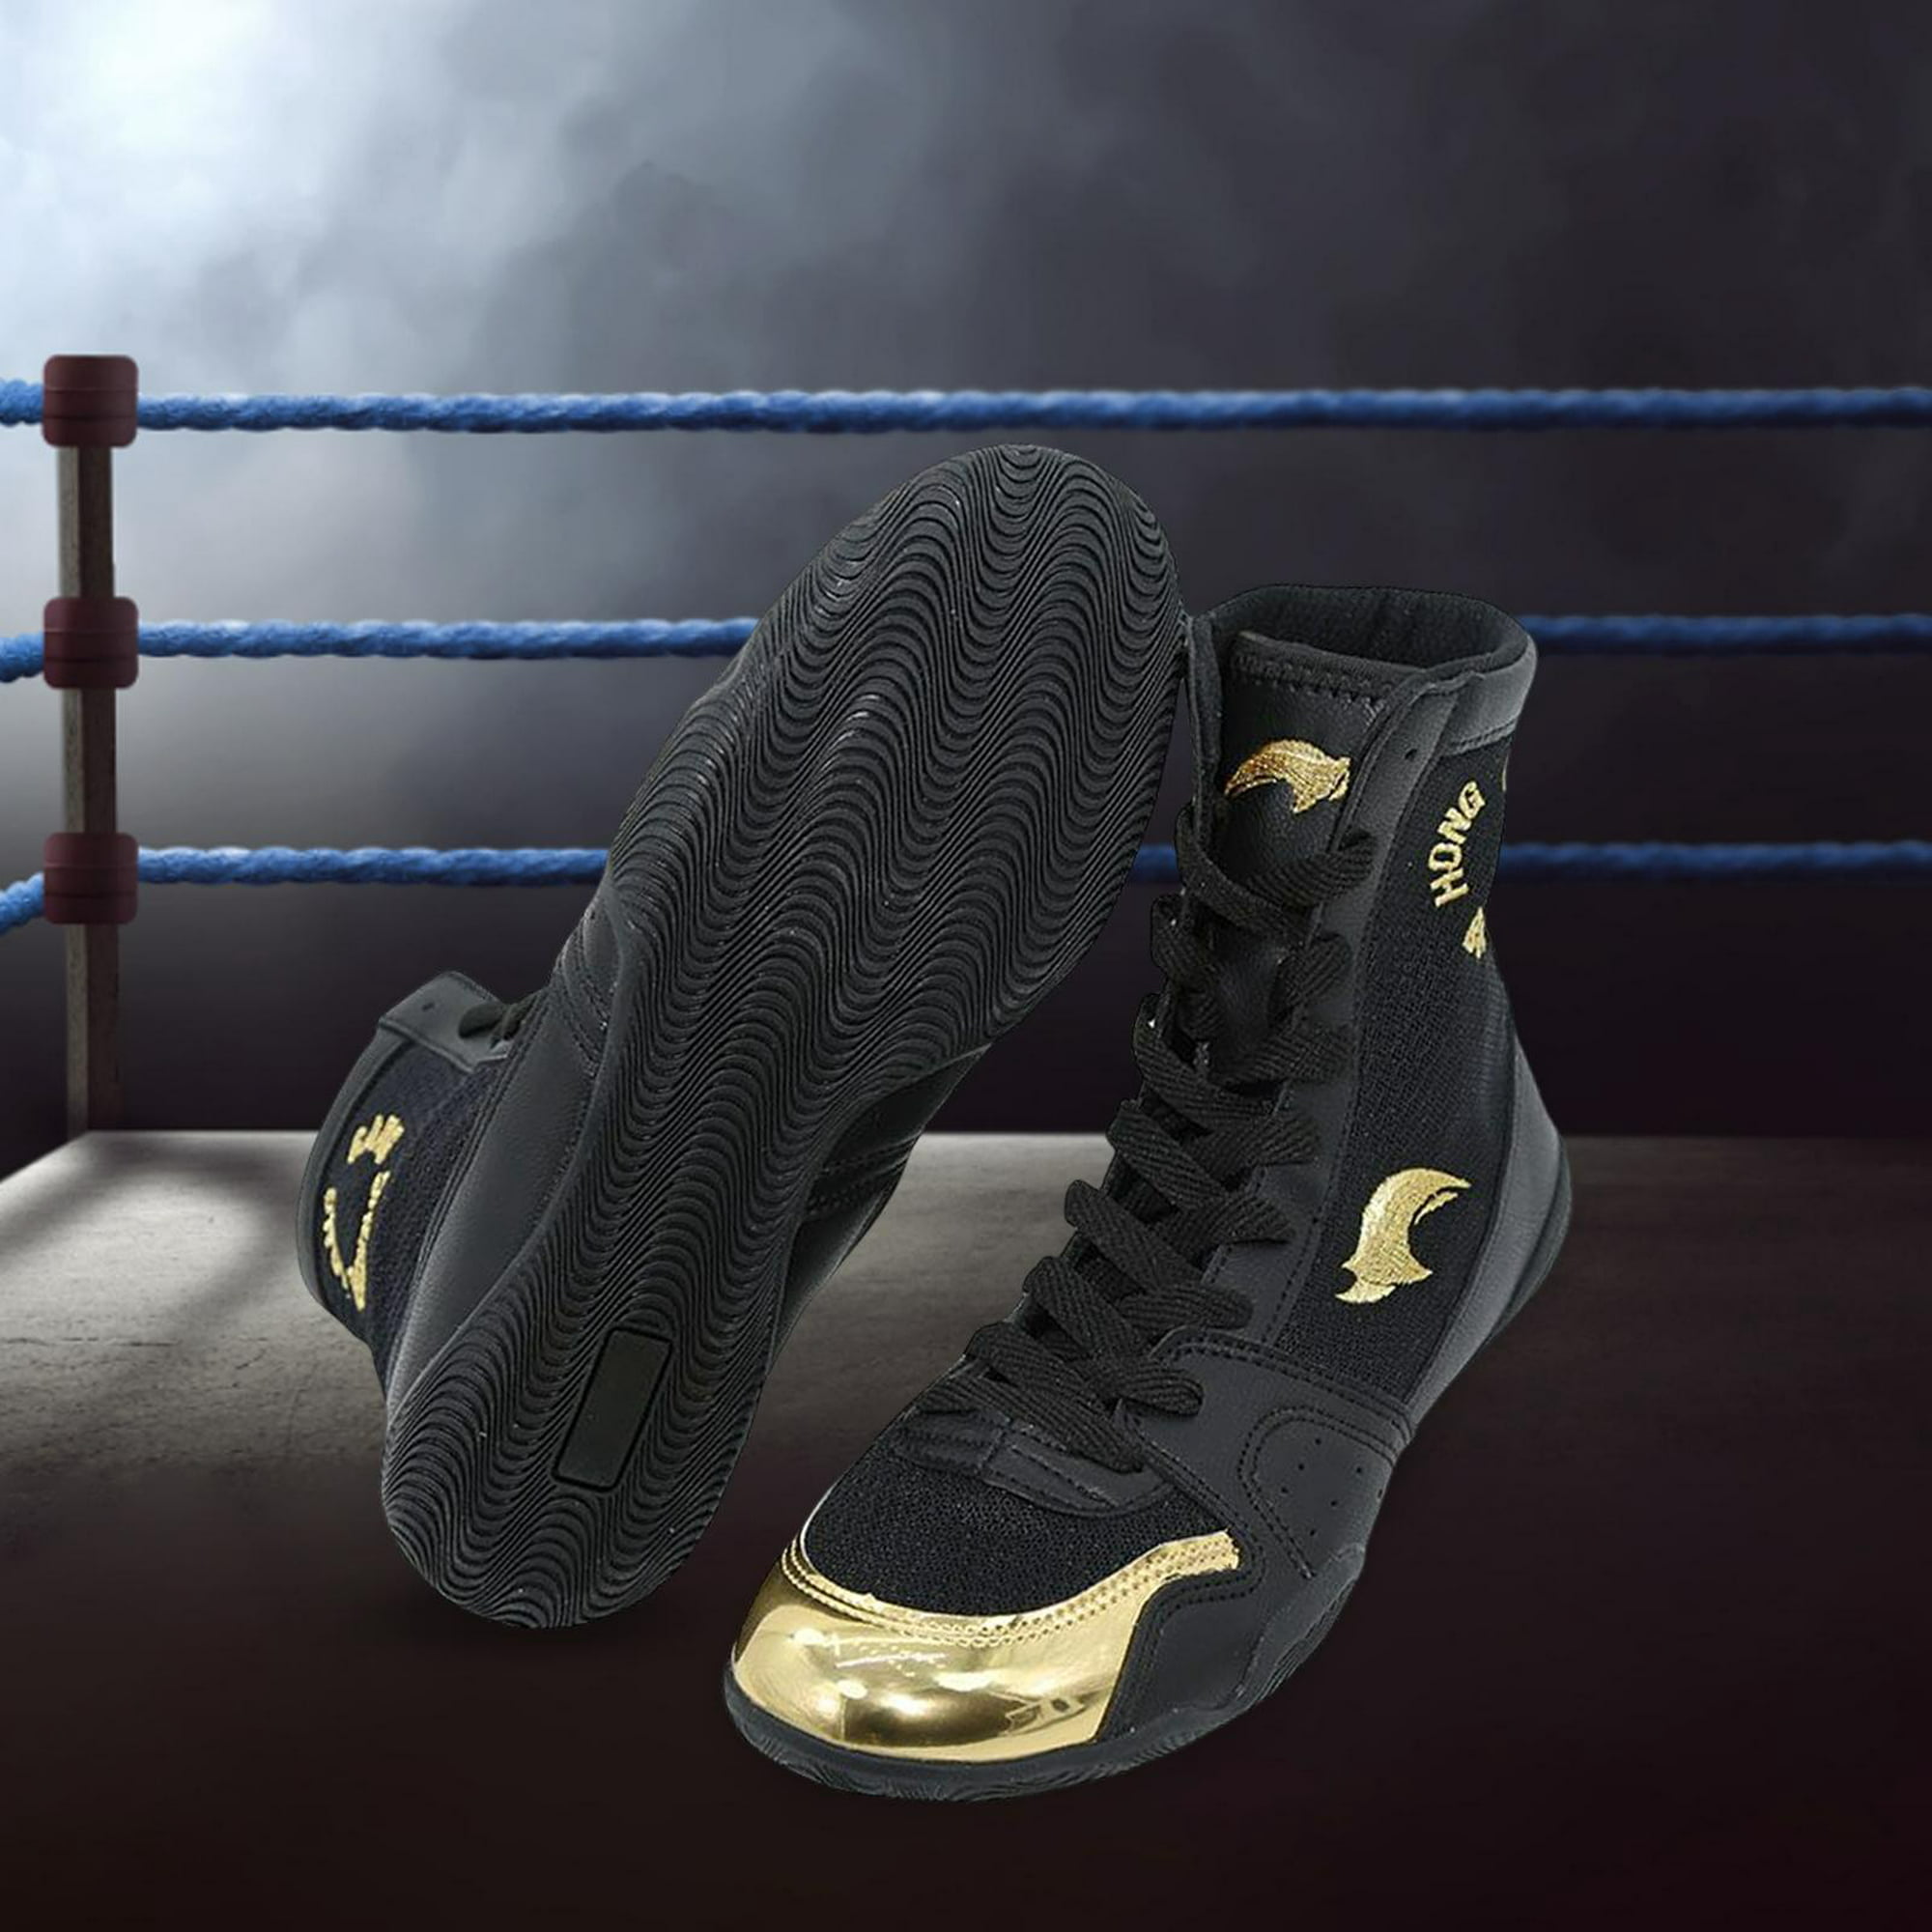 Fighting Superior Zapatos de Boxeo